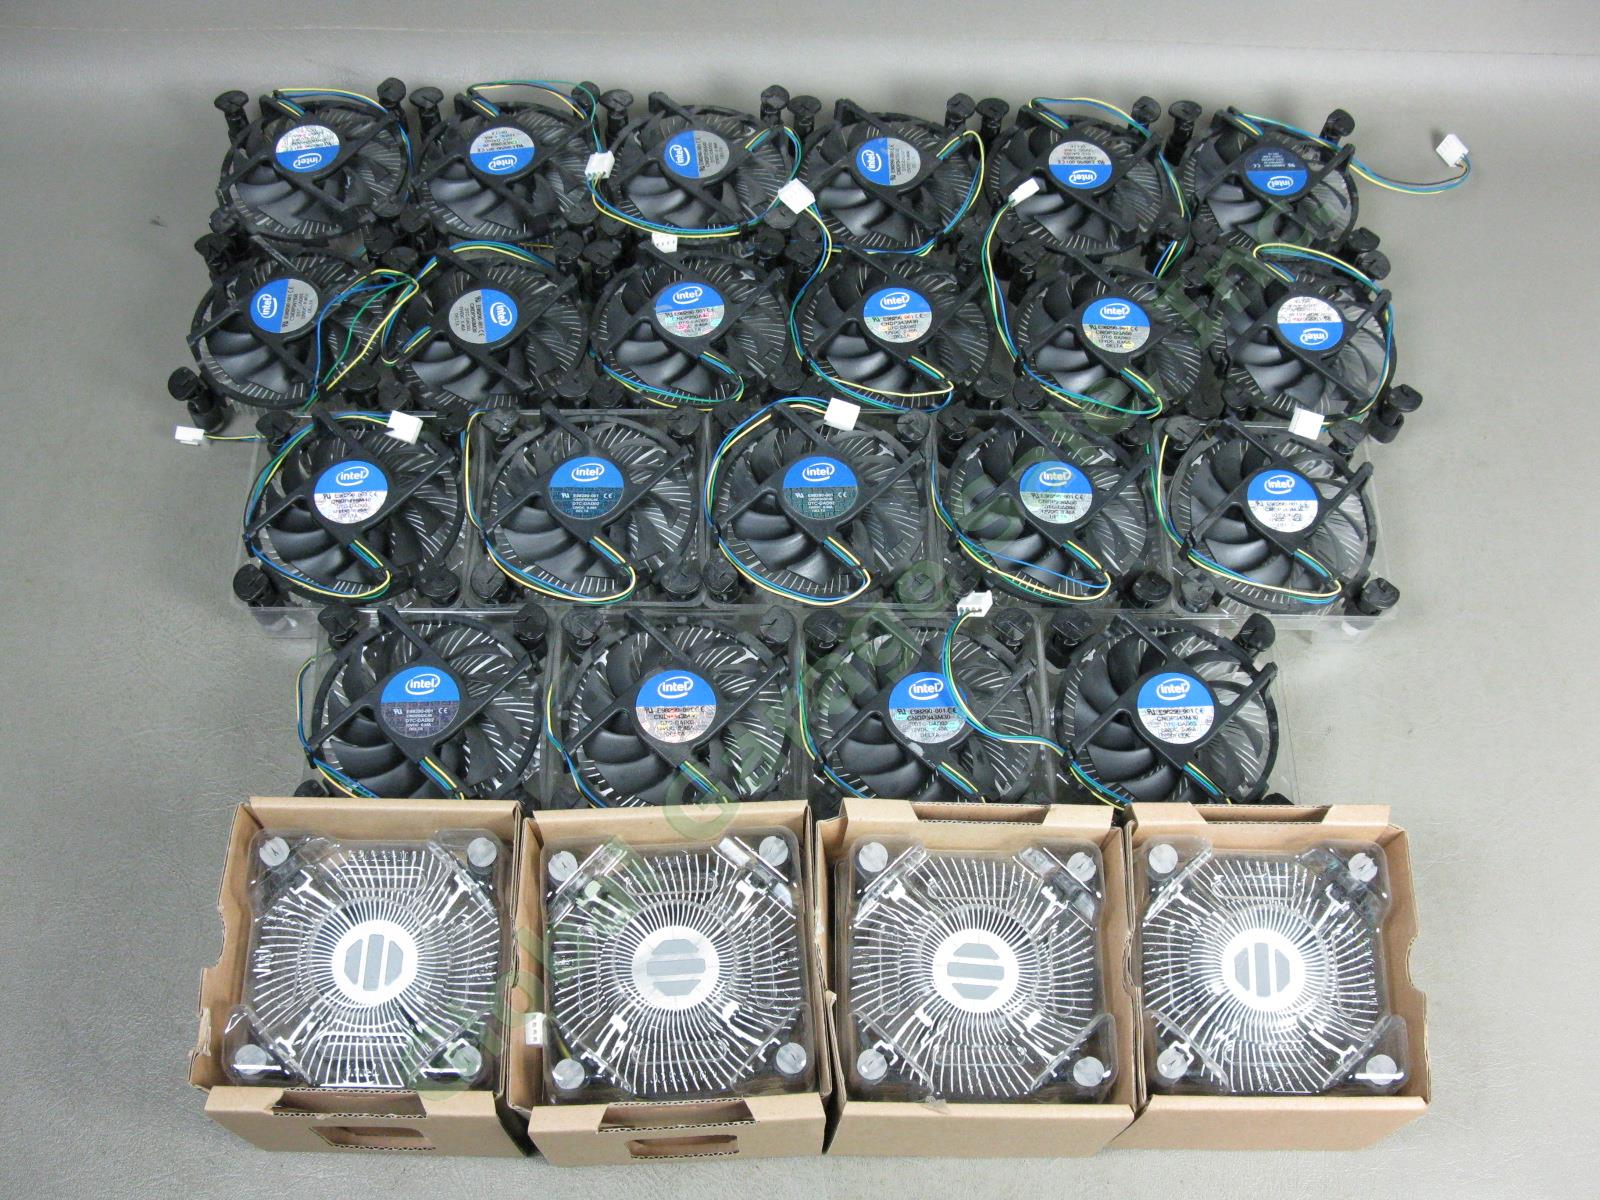 25 NEW Intel E98290-001 LGA1155 Heatsink CPU Cooler Cooling Fans Lot Intel i3 NR